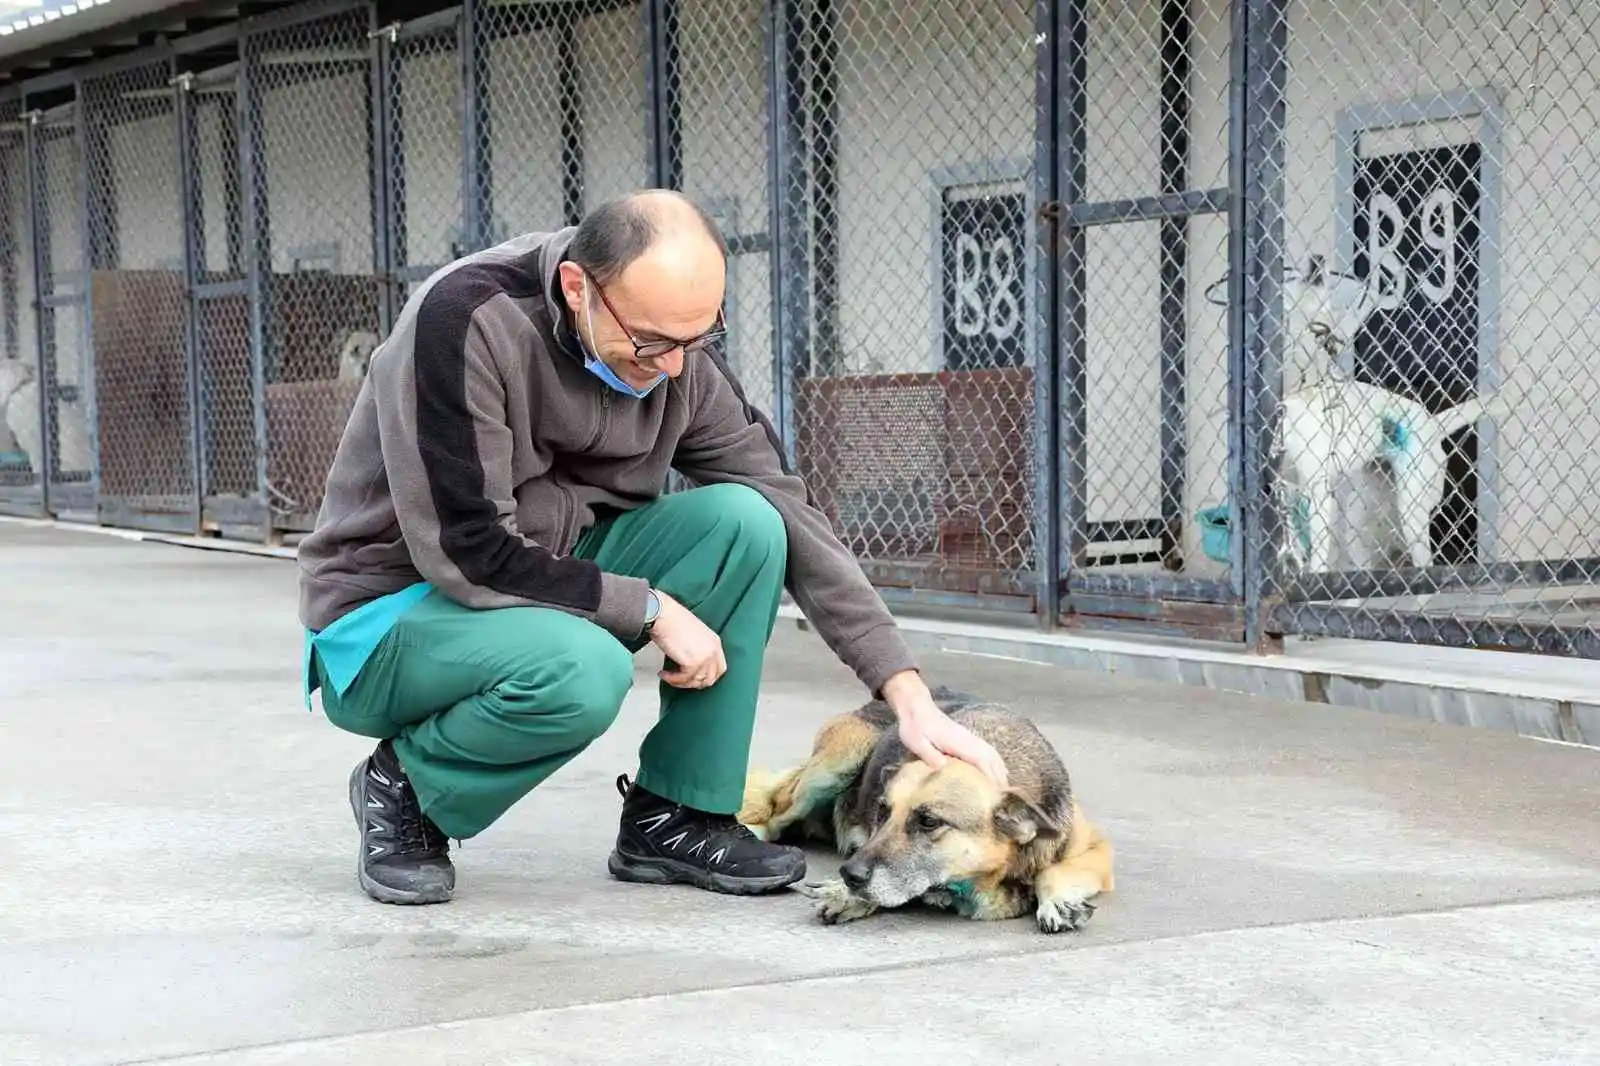 Bayraklı’da yaralı halde bulunan köpek kanseri yendi
